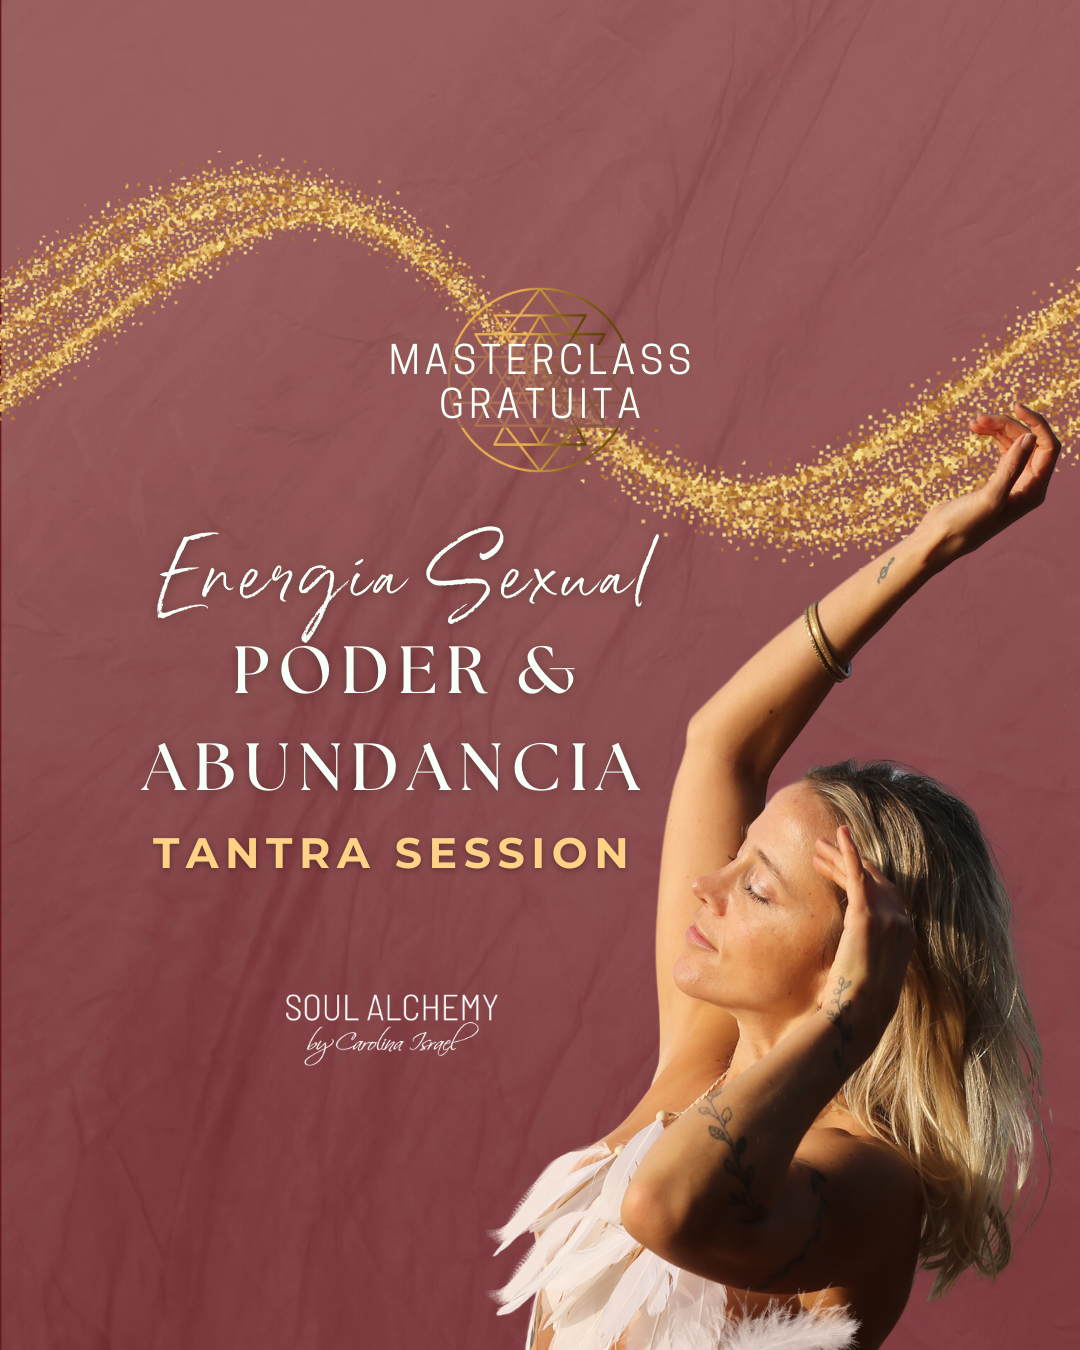 Masterclass Gratuita: Energía Sexual, Poder & Abundancia- TANTRA SESSION